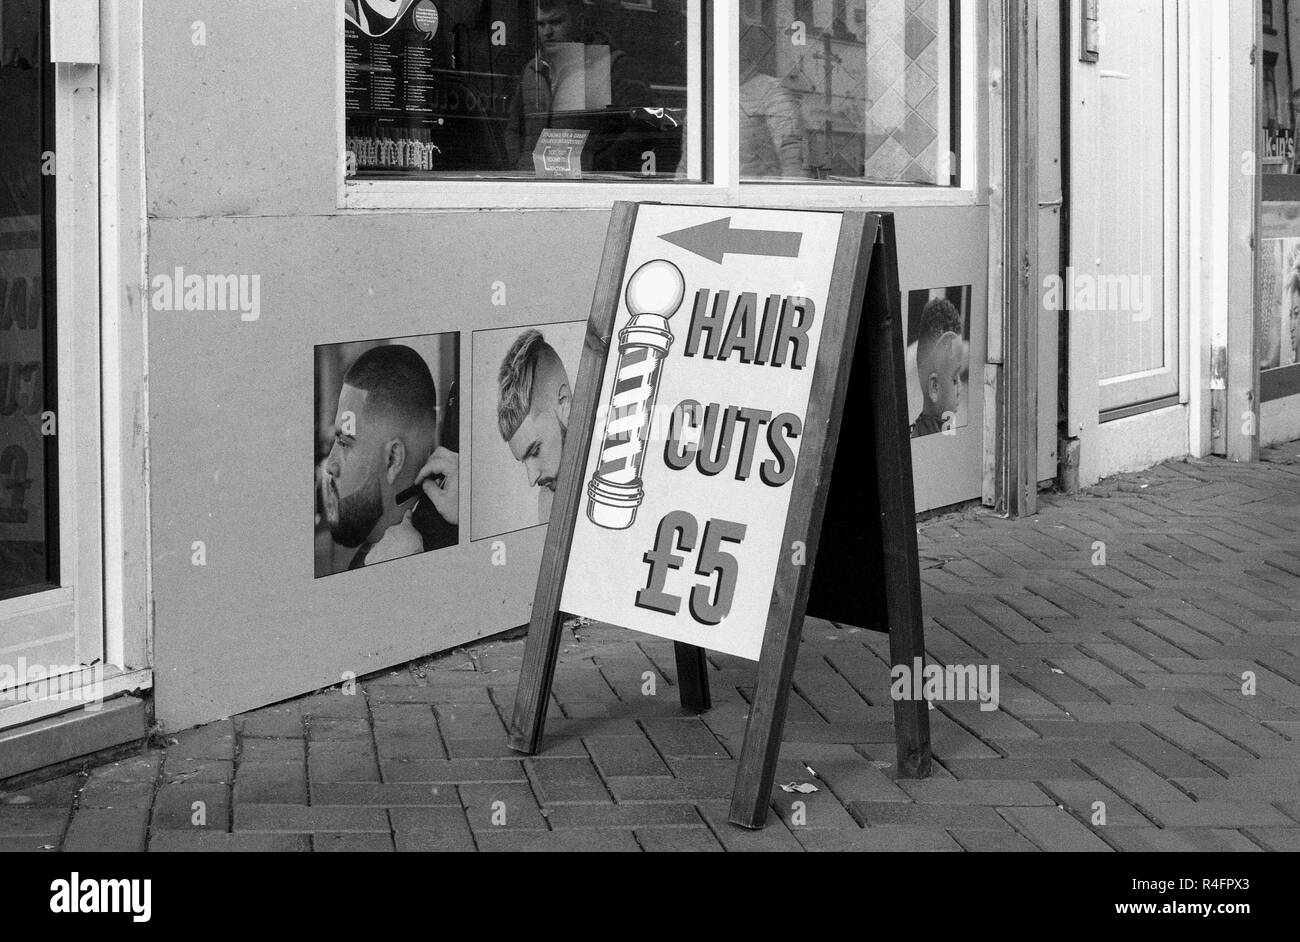 Hair cuts Imágenes de stock en blanco y negro - Alamy